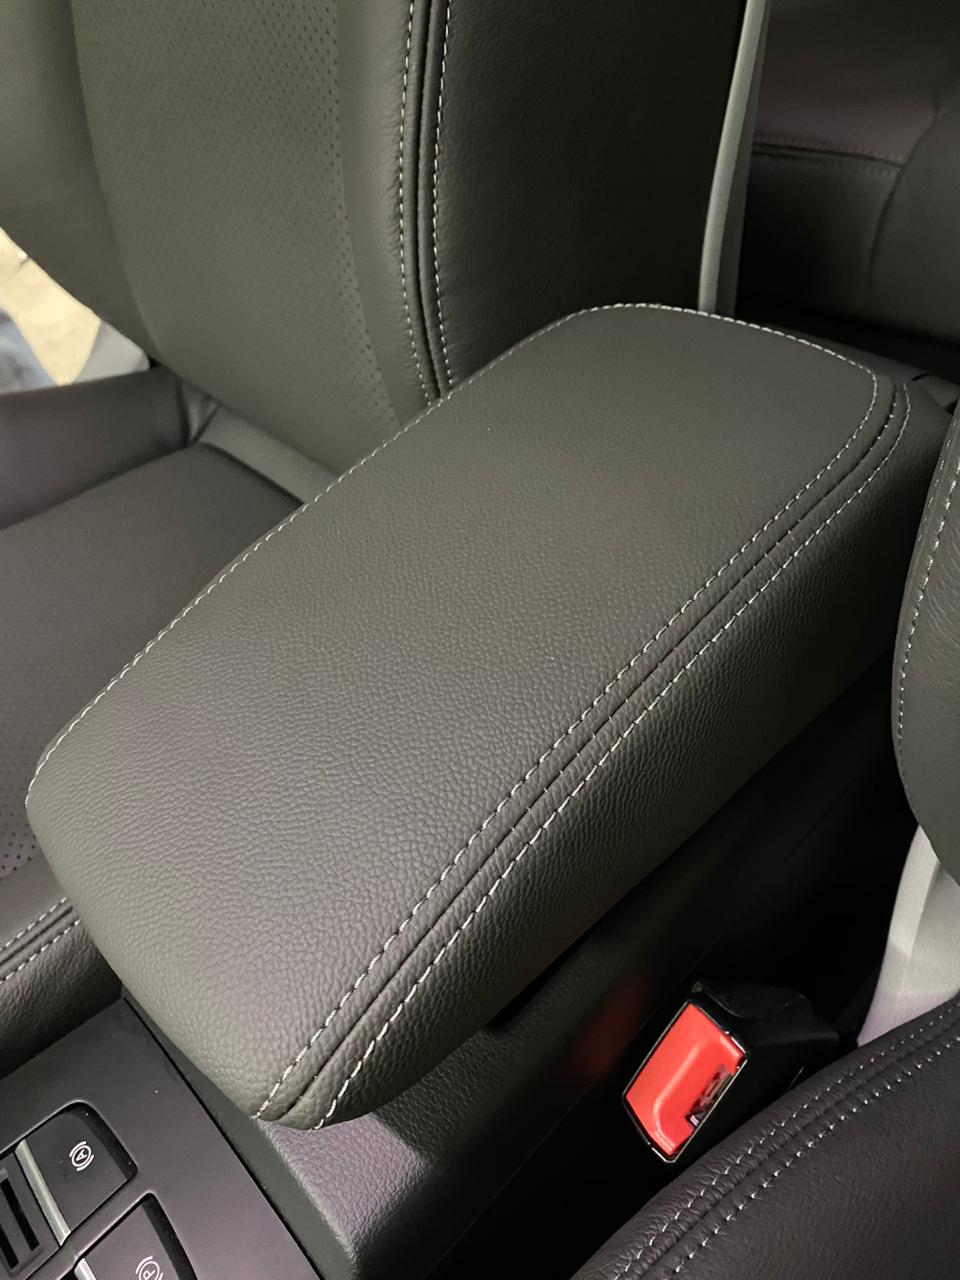 El vinilcuero, un material ideal para renovar los asientos de su automóvil  - Imapar Ltda. Tapicería en Cuero para autos